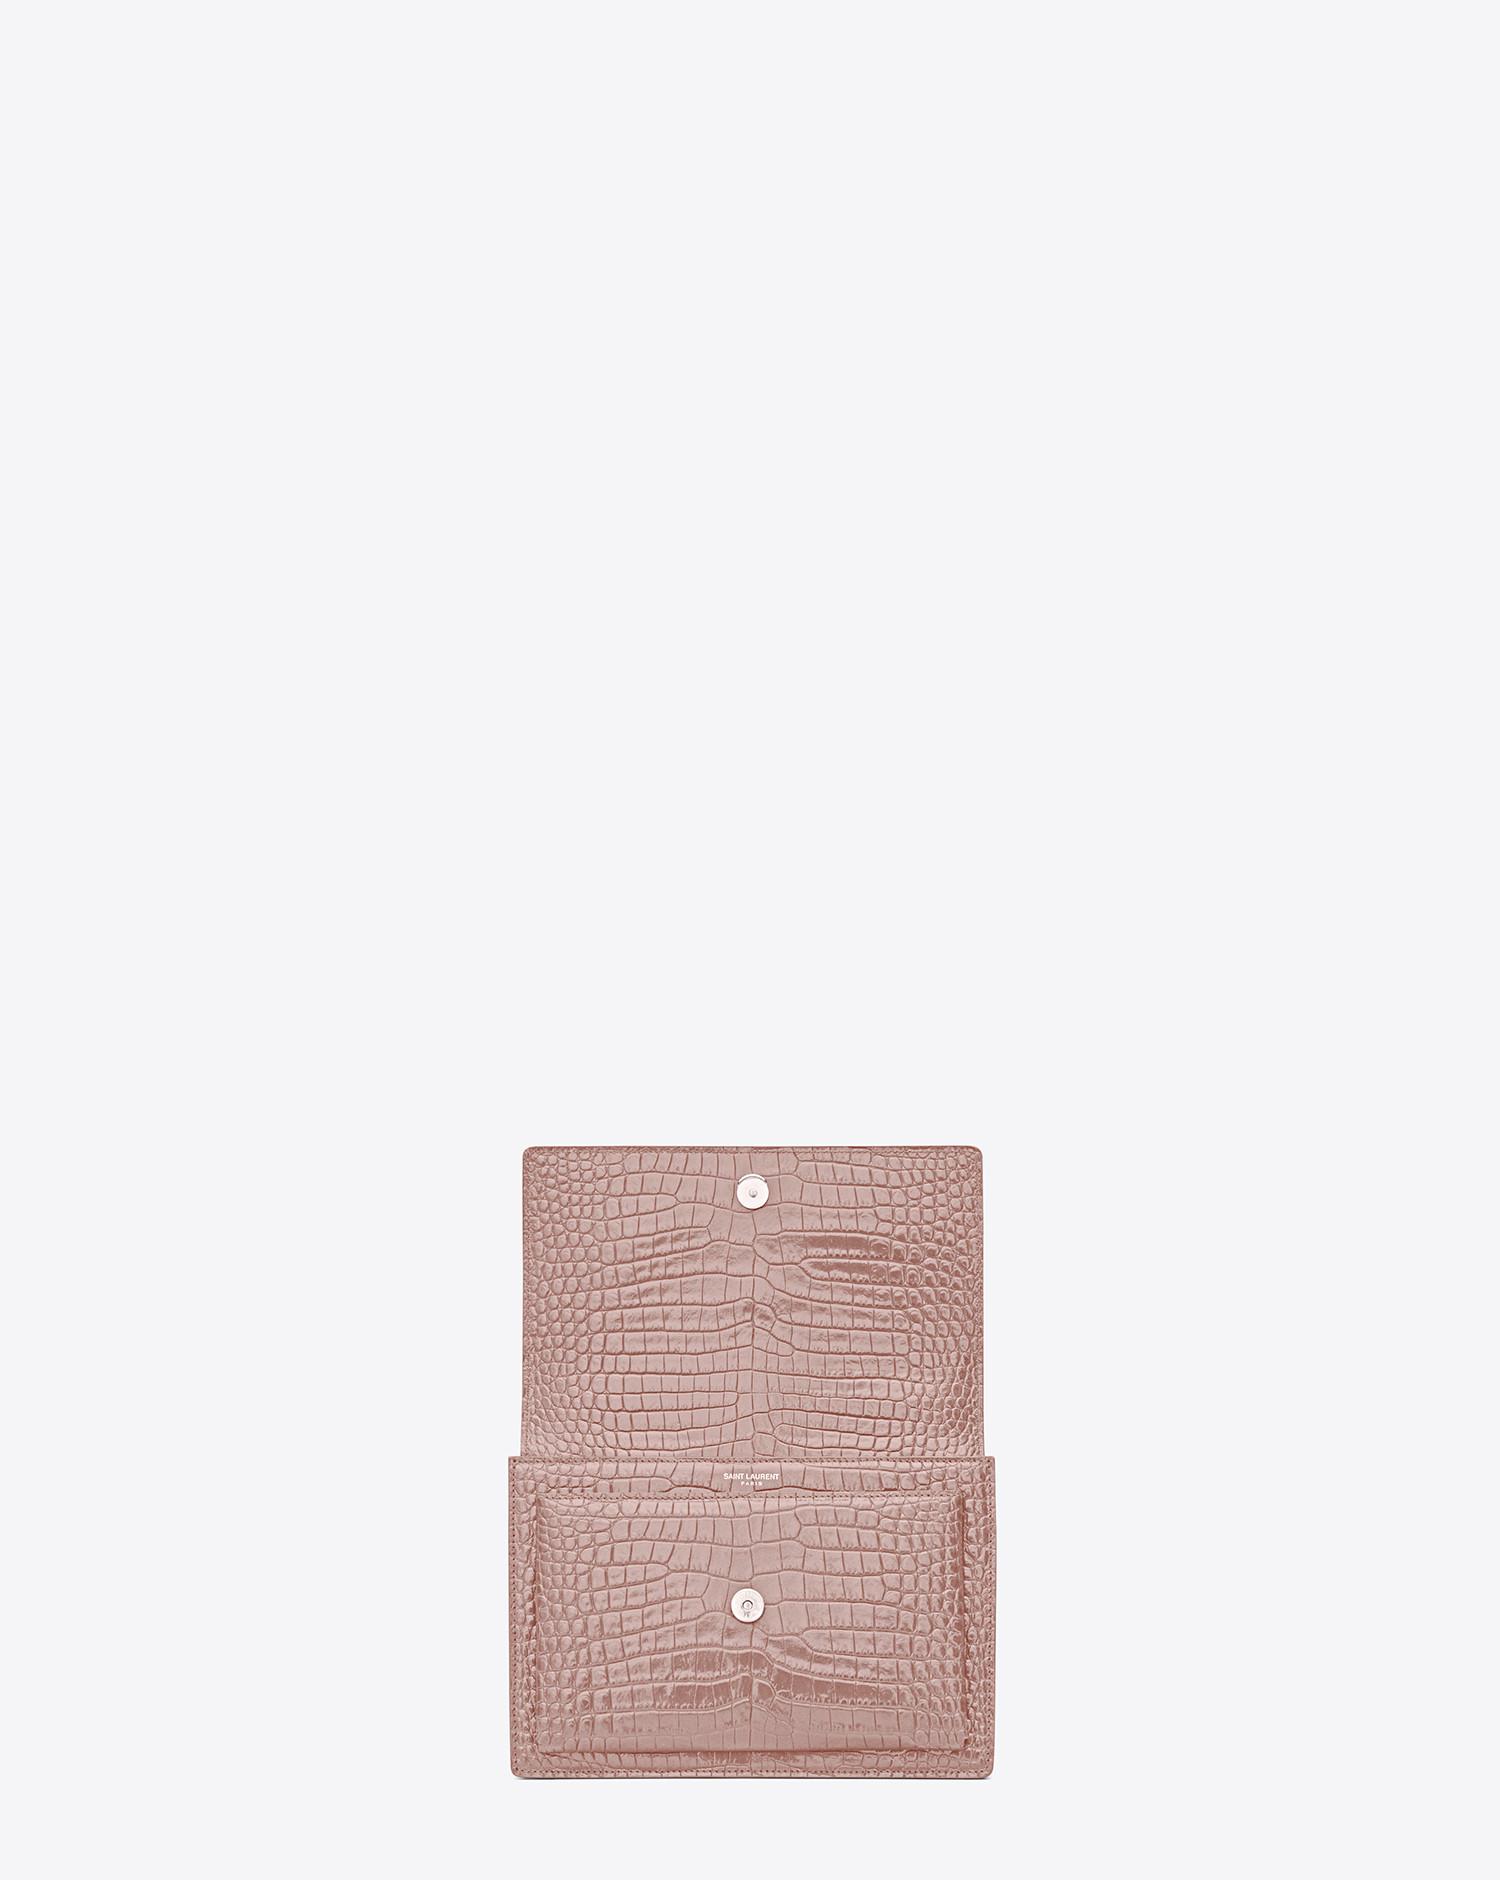 Saint Laurent Powder Pink Croc Sunset Bag — BLOGGER ARMOIRE